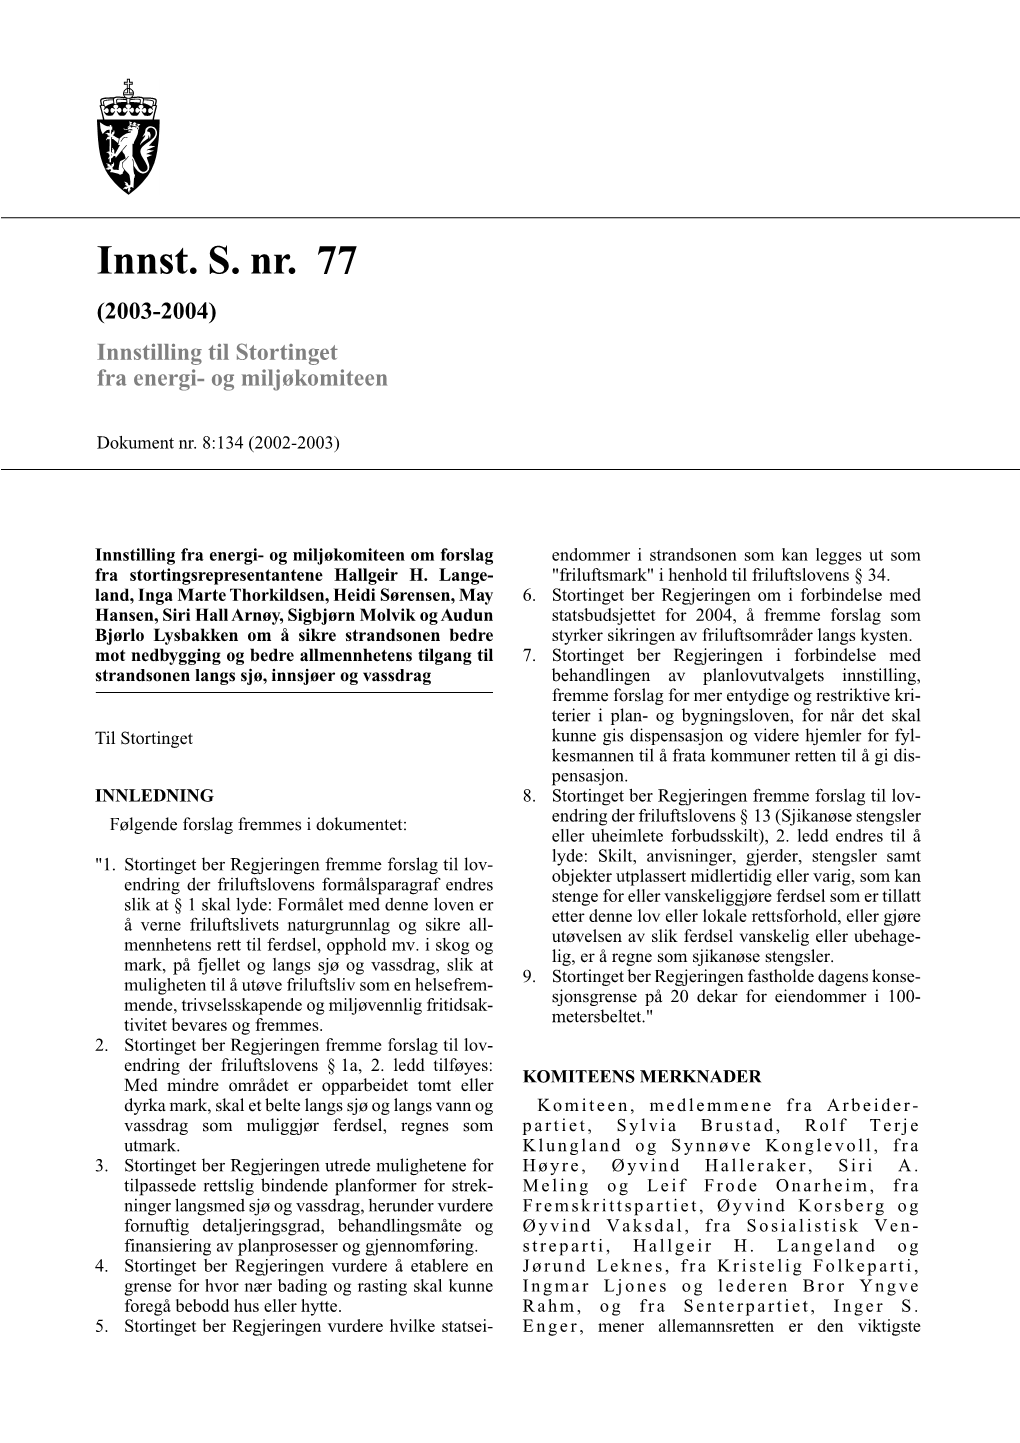 Innst. S. Nr. 77 (2003-2004) Innstilling Til Stortinget Fra Energi- Og Miljøkomiteen